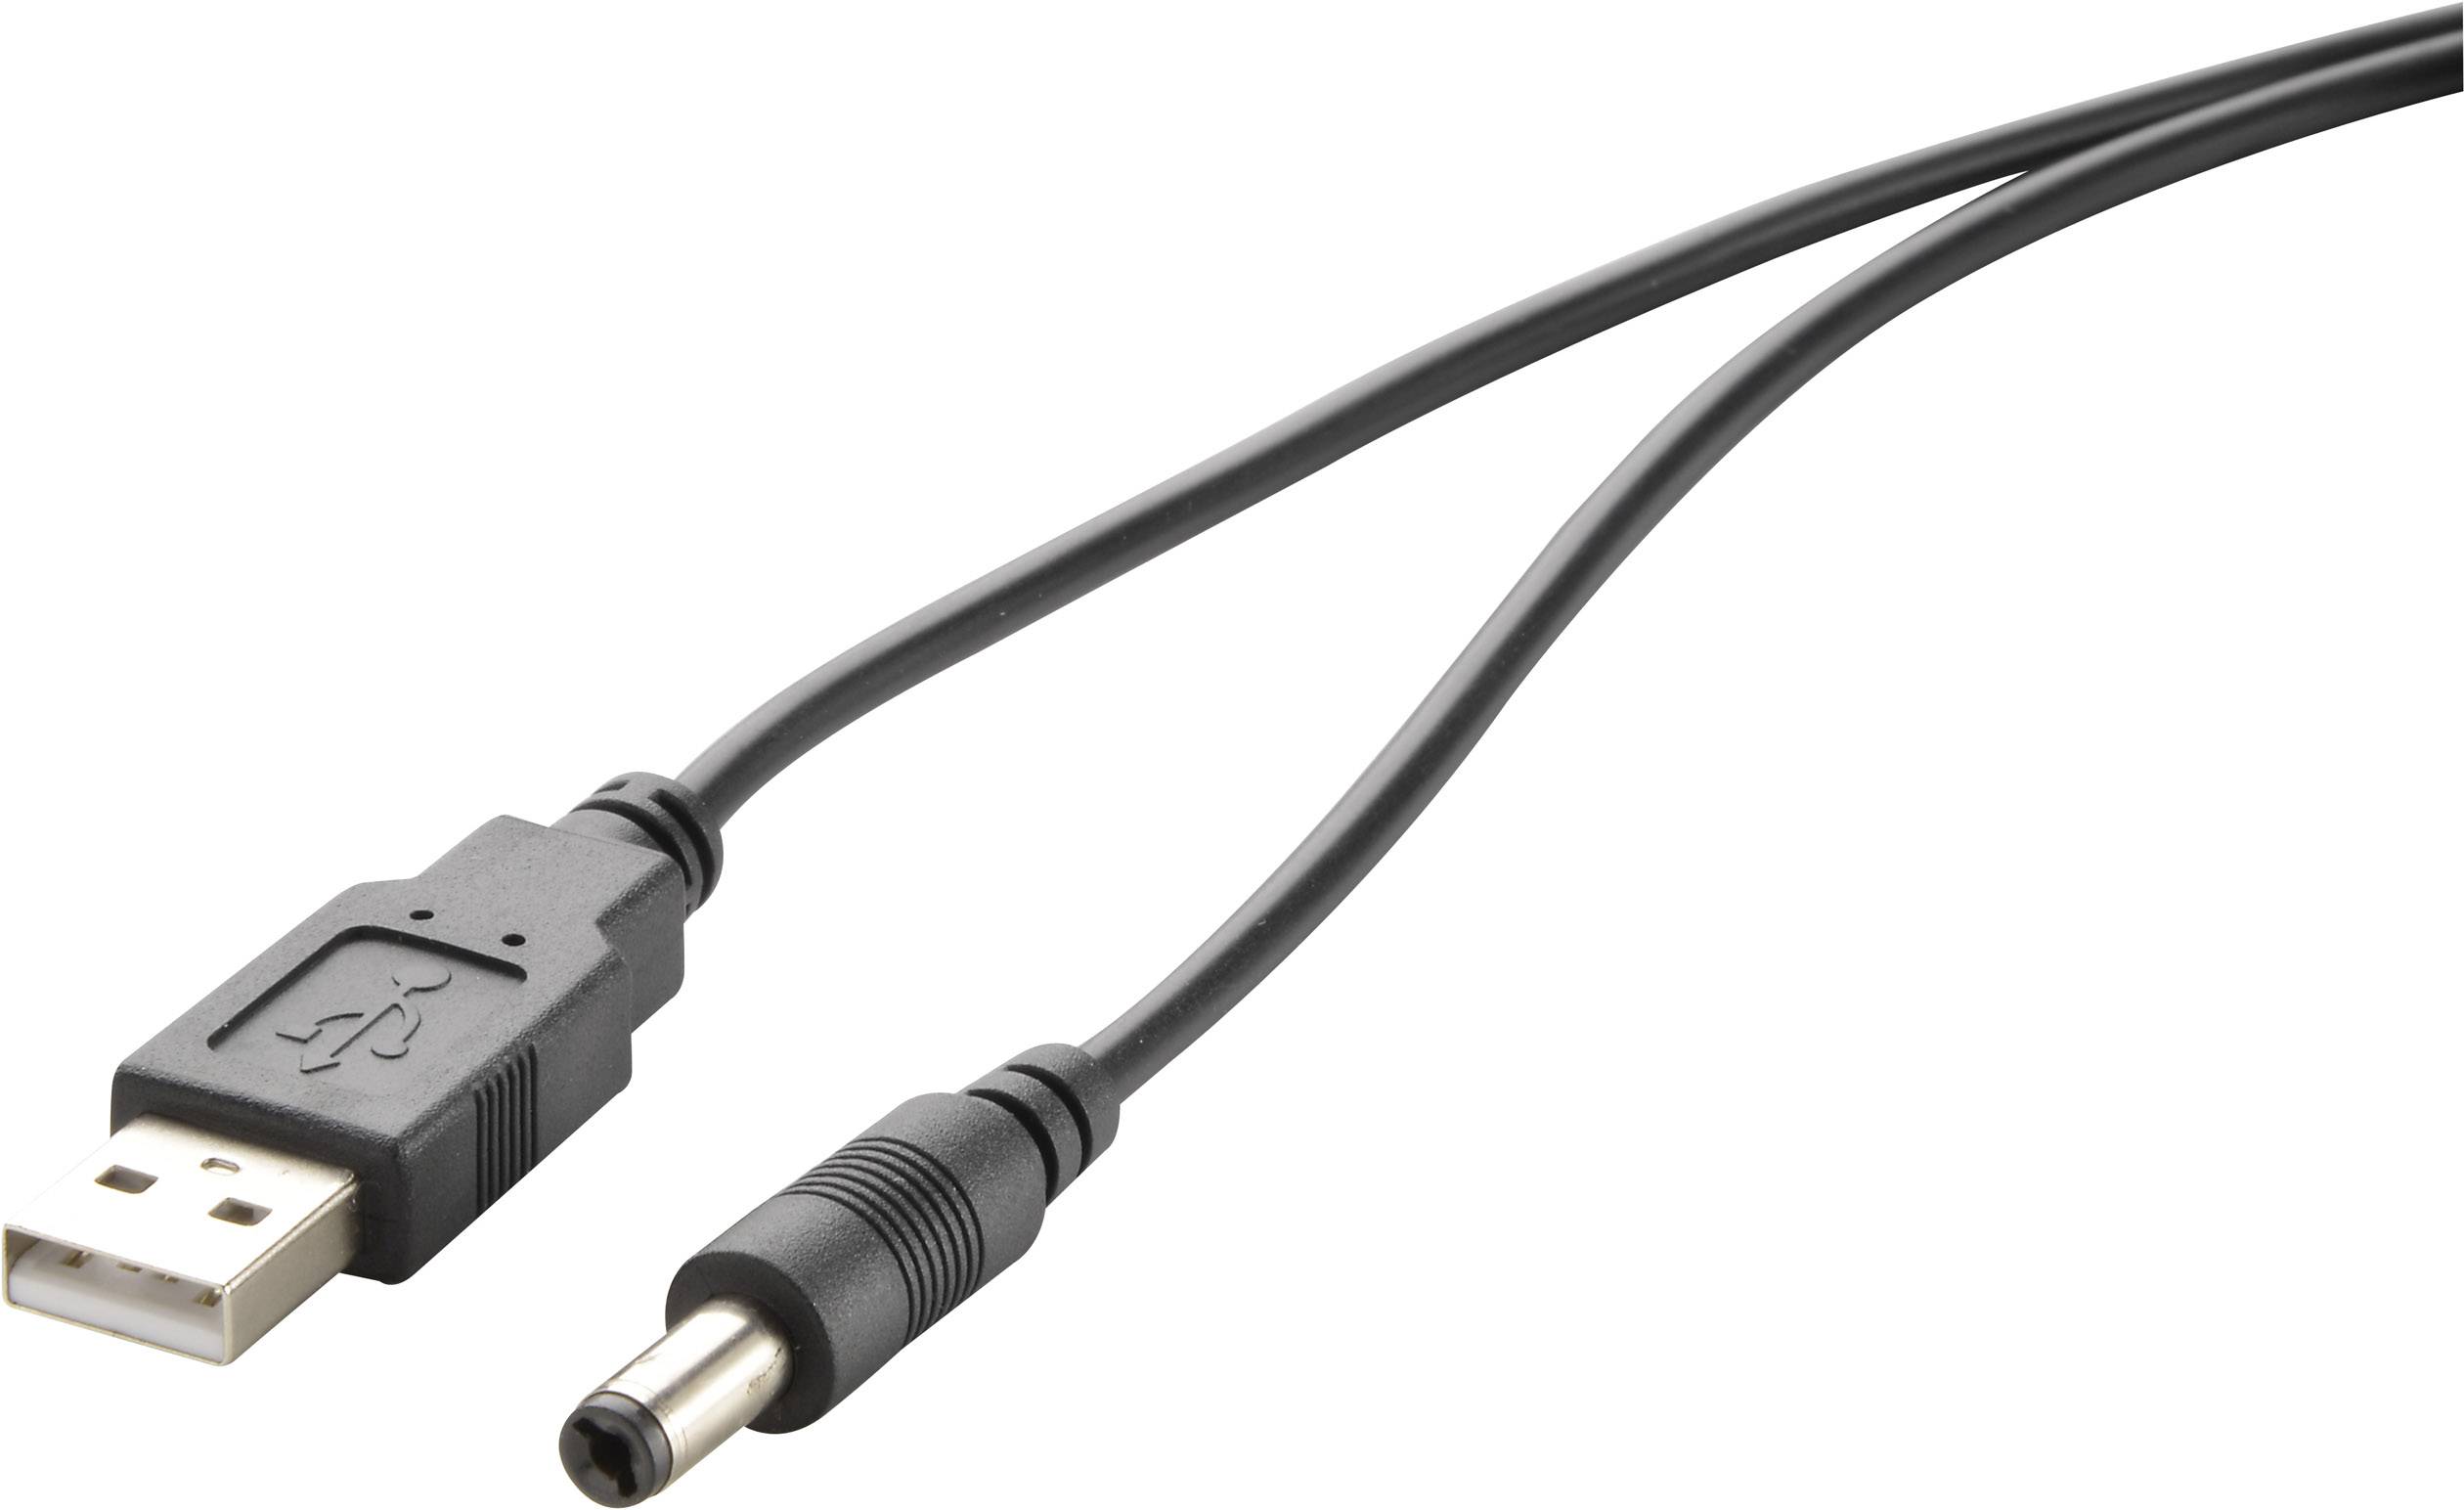 Renkforce USB cable 2.0 USB-A 5.5mm DC plug 1.00 m gold plated connectors RF-4079664 | Conrad.com